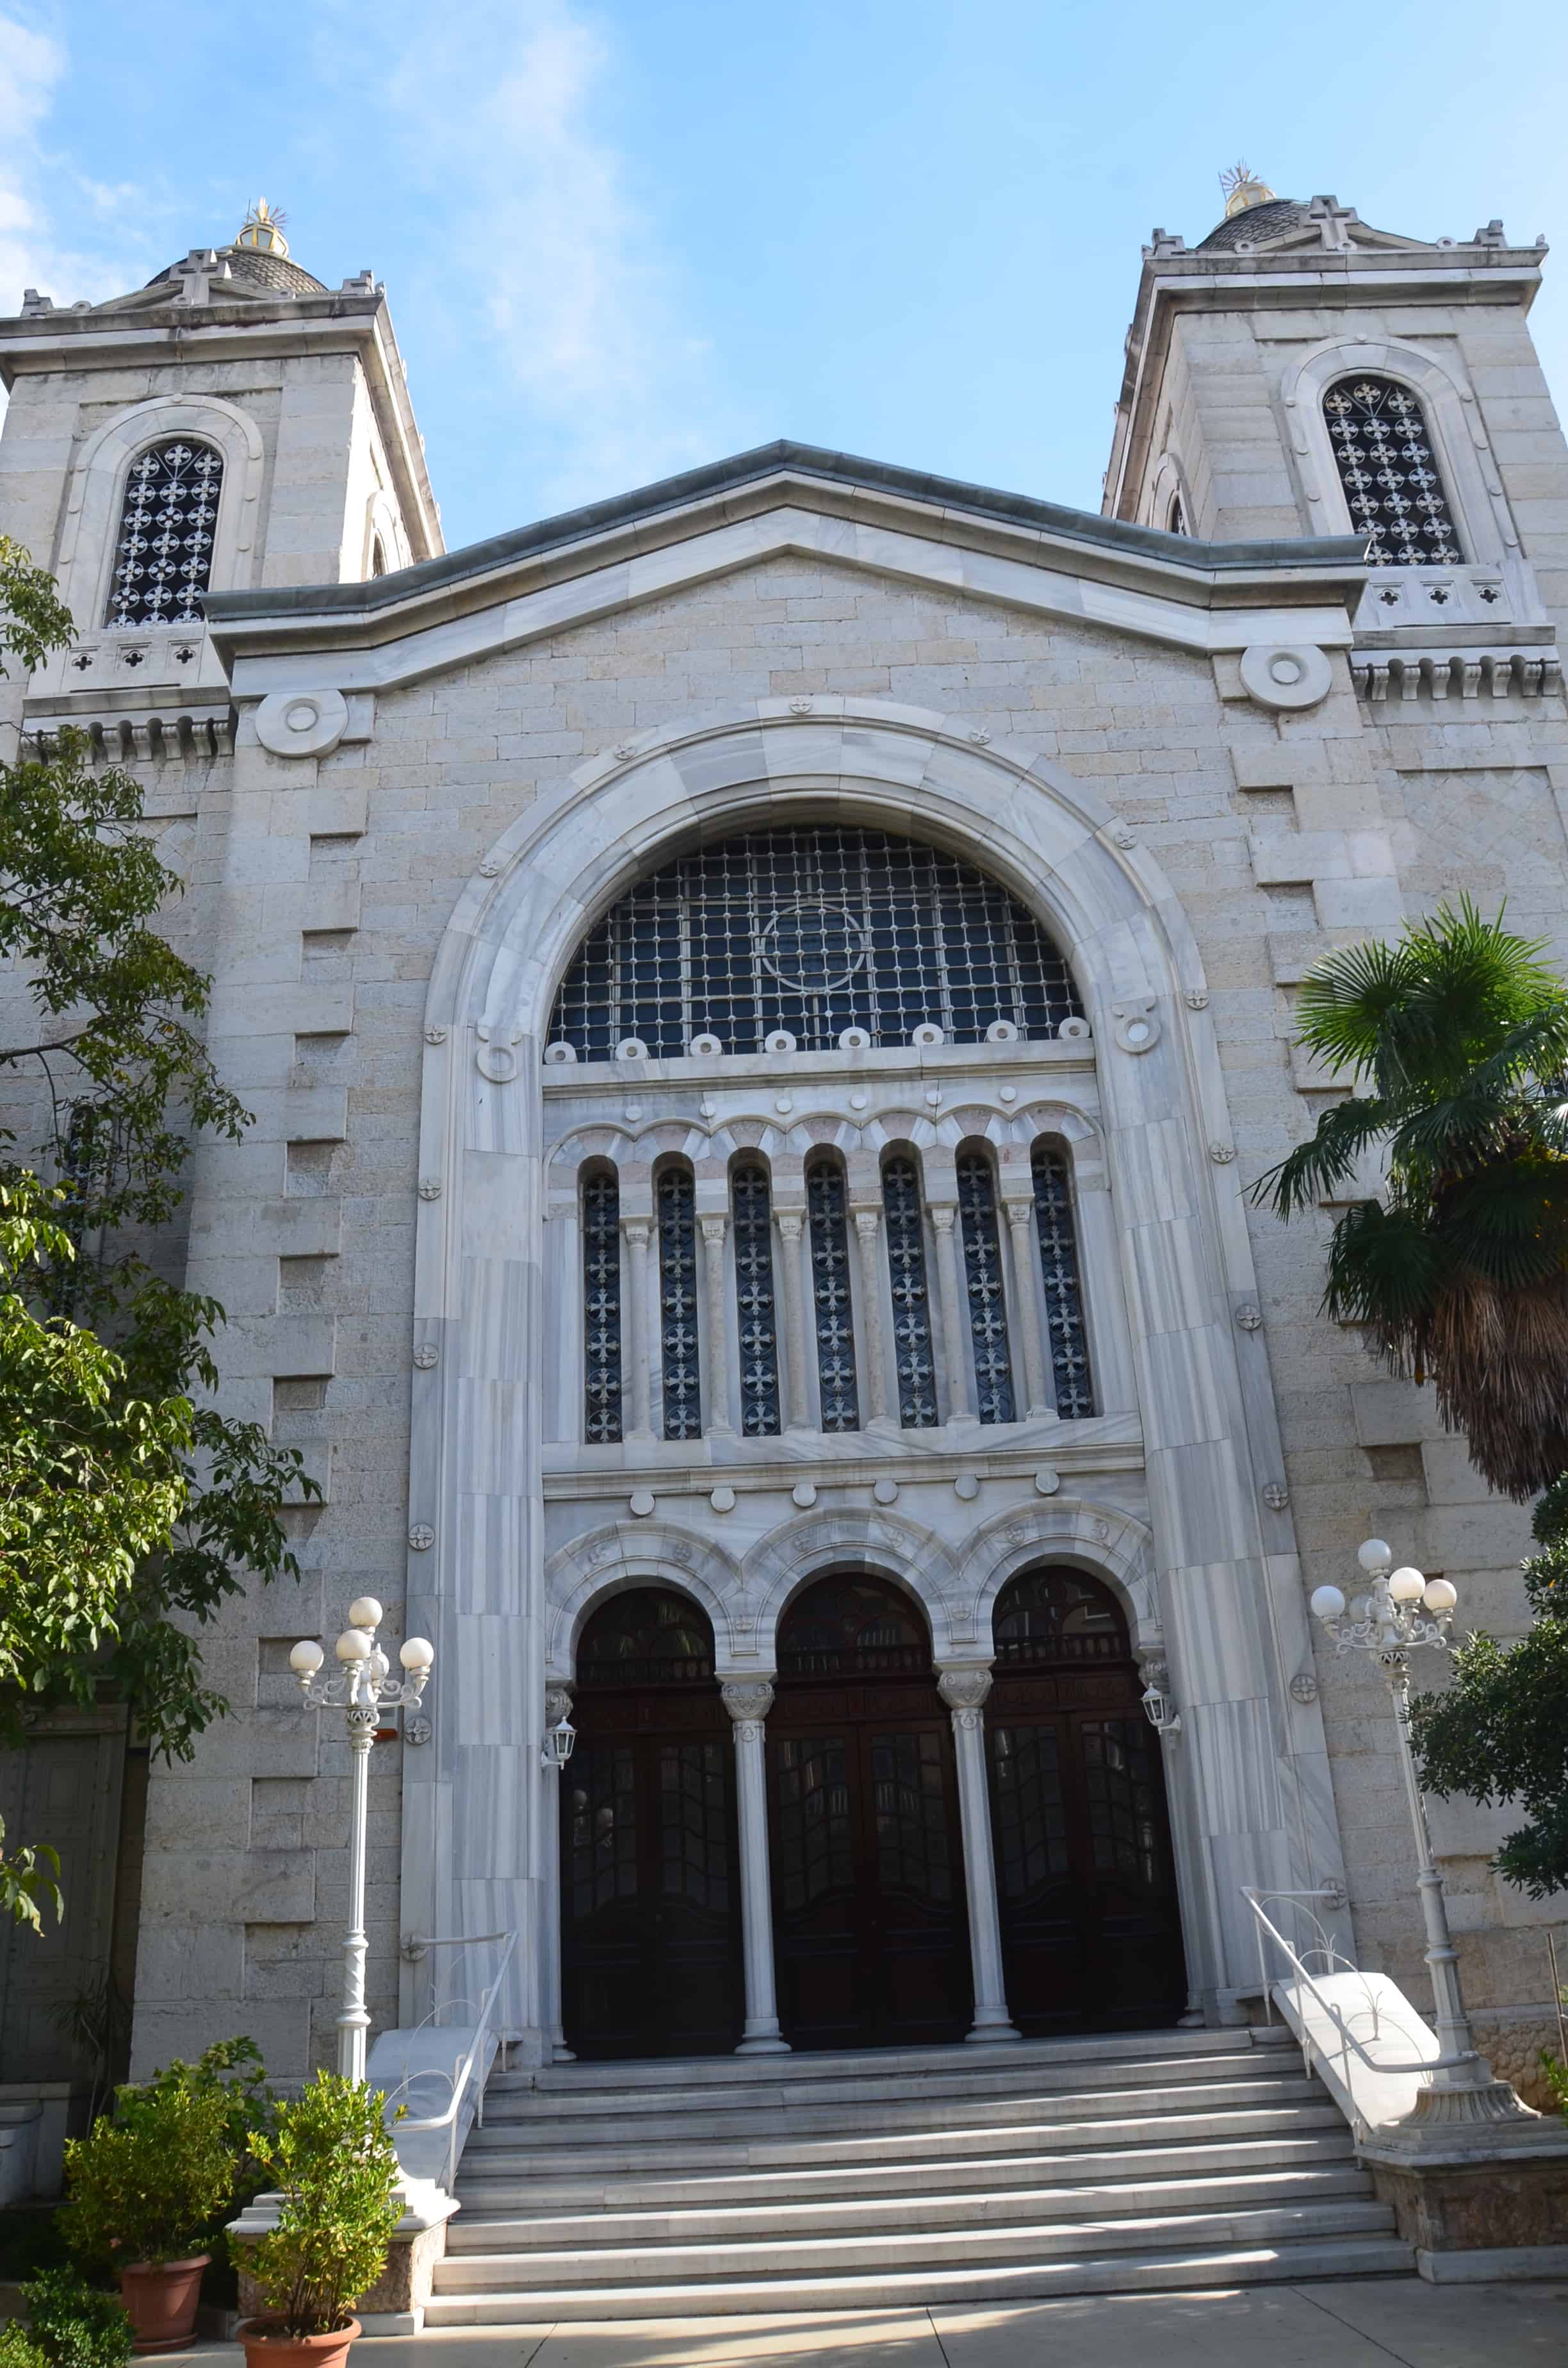 Entrance to Agia Triada Greek Orthodox Church in Moda, Kadıköy, Istanbul, Turkey